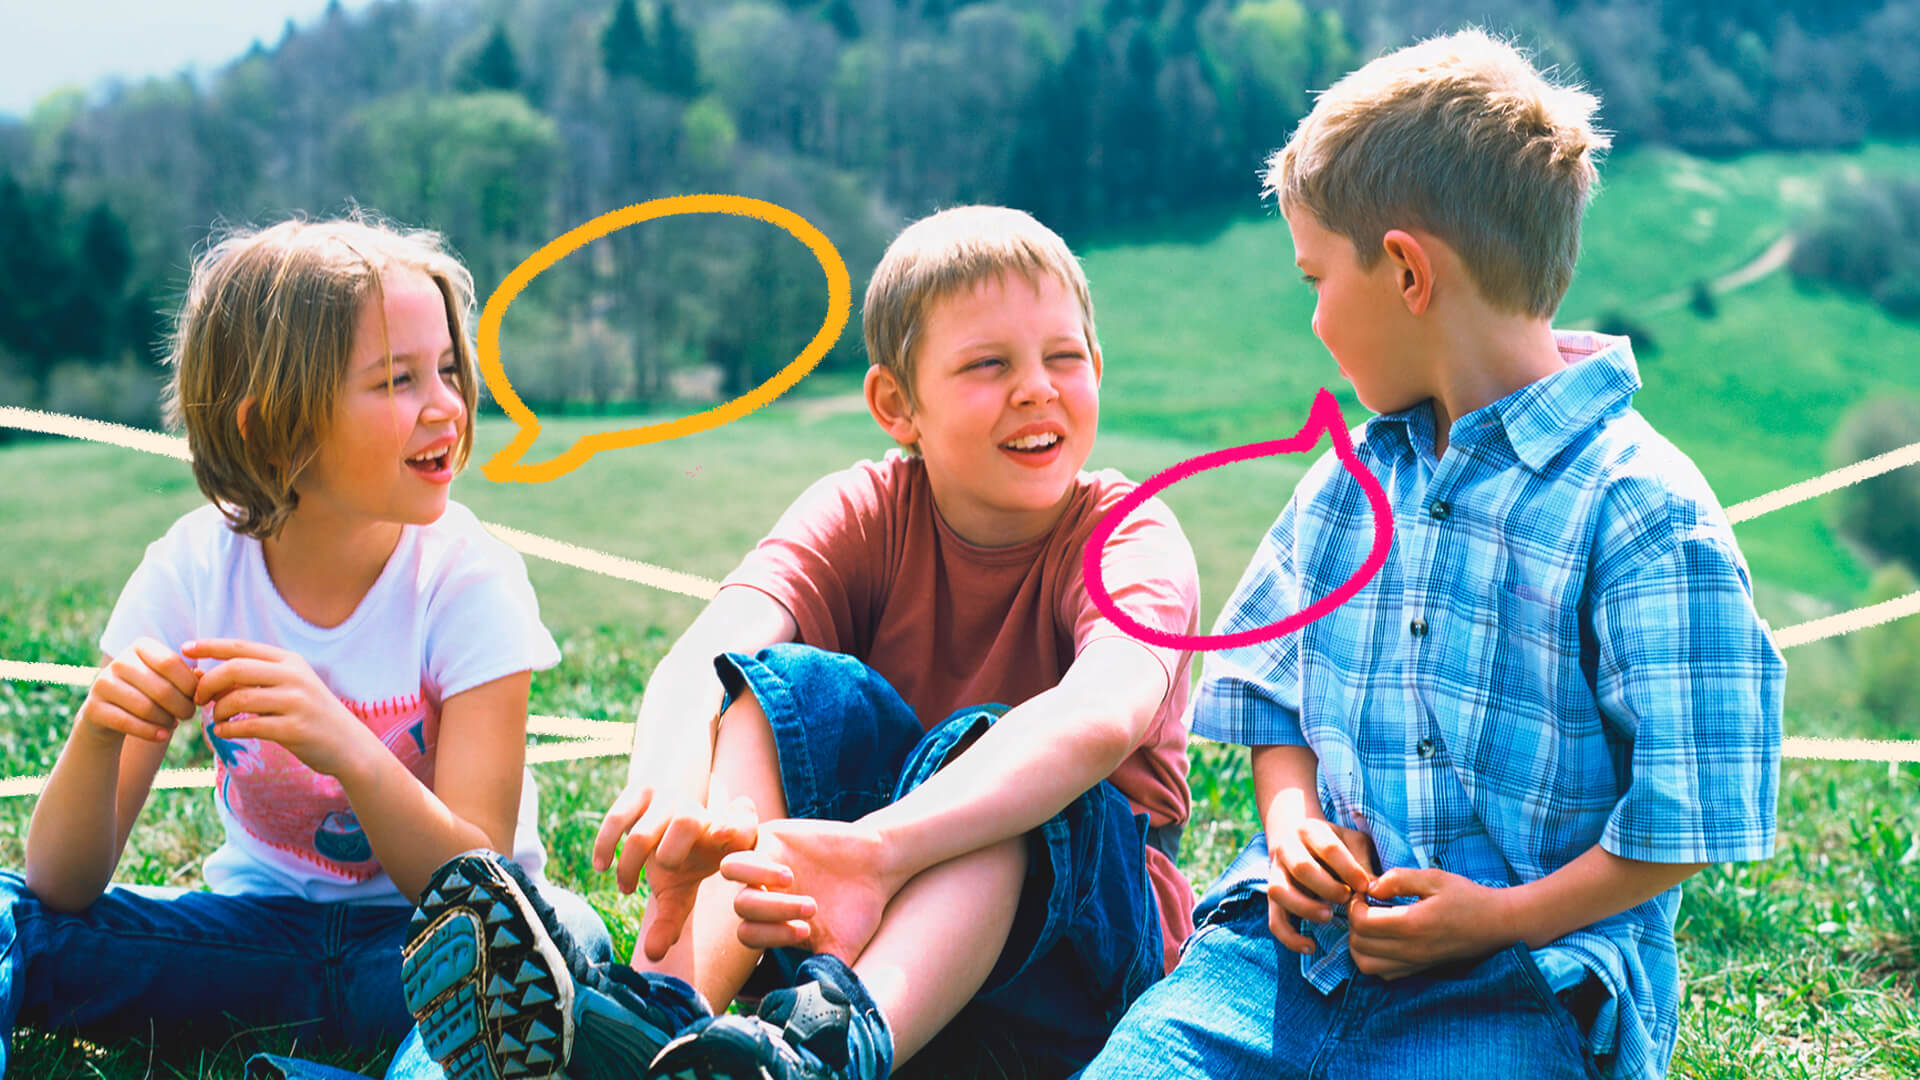 Três crianças brancas sentadas na grama se olhando e conversando. Ilustrações de balões coloridos indicam um diálogo entre eles.